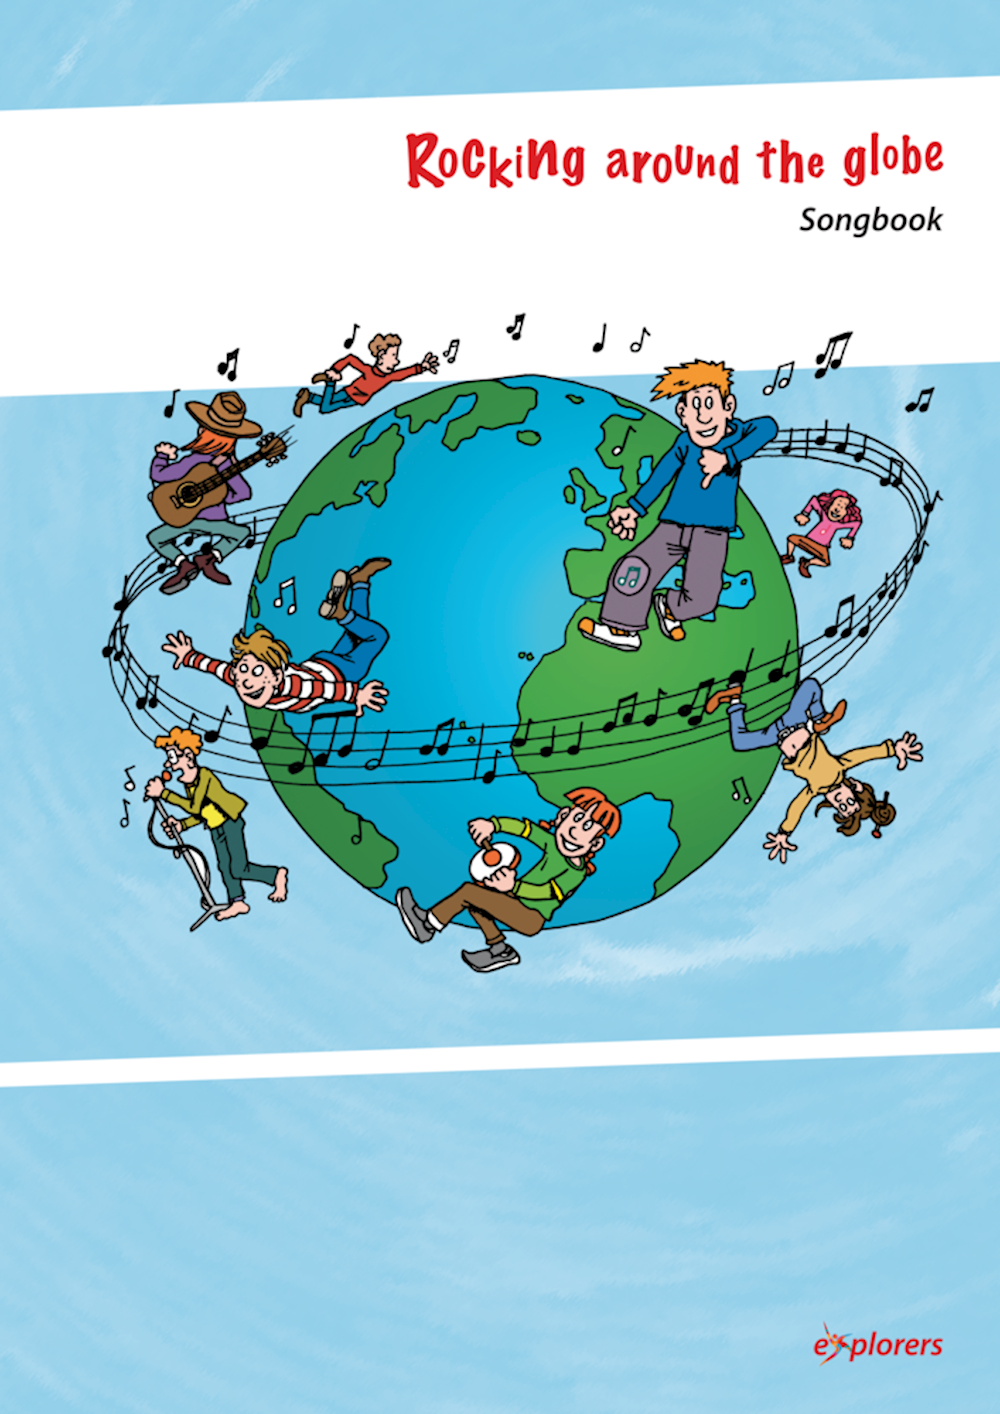 Rocking around the globe Songbook